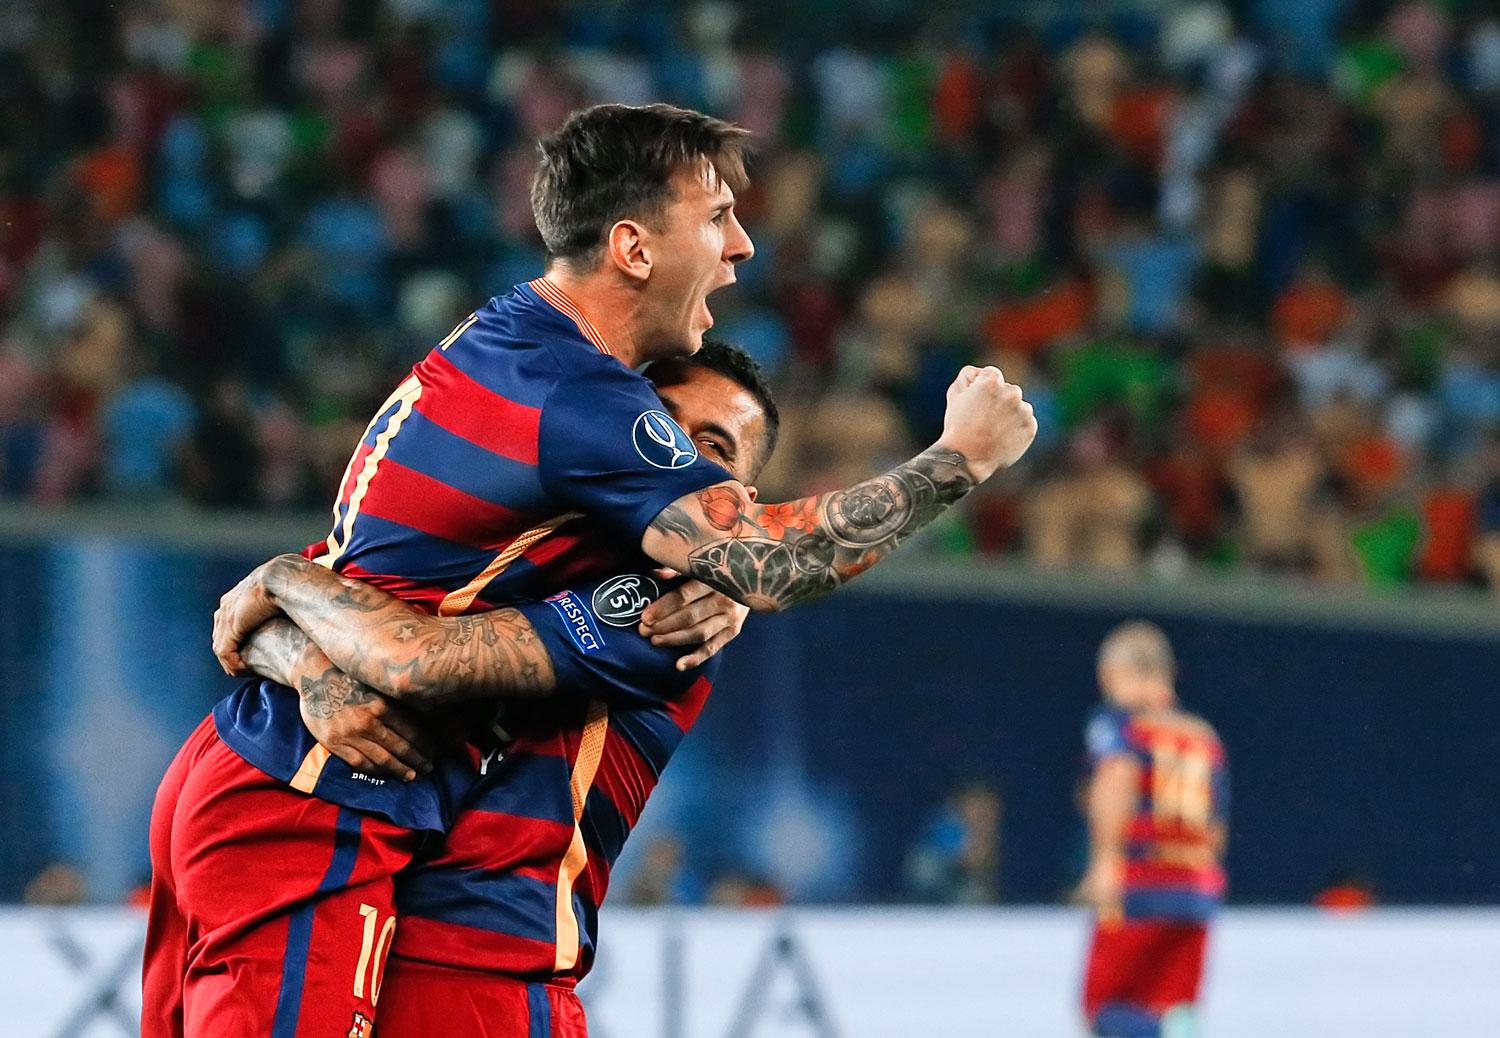 Rajzos ölelés: Messi Daniel Alves karjaiban